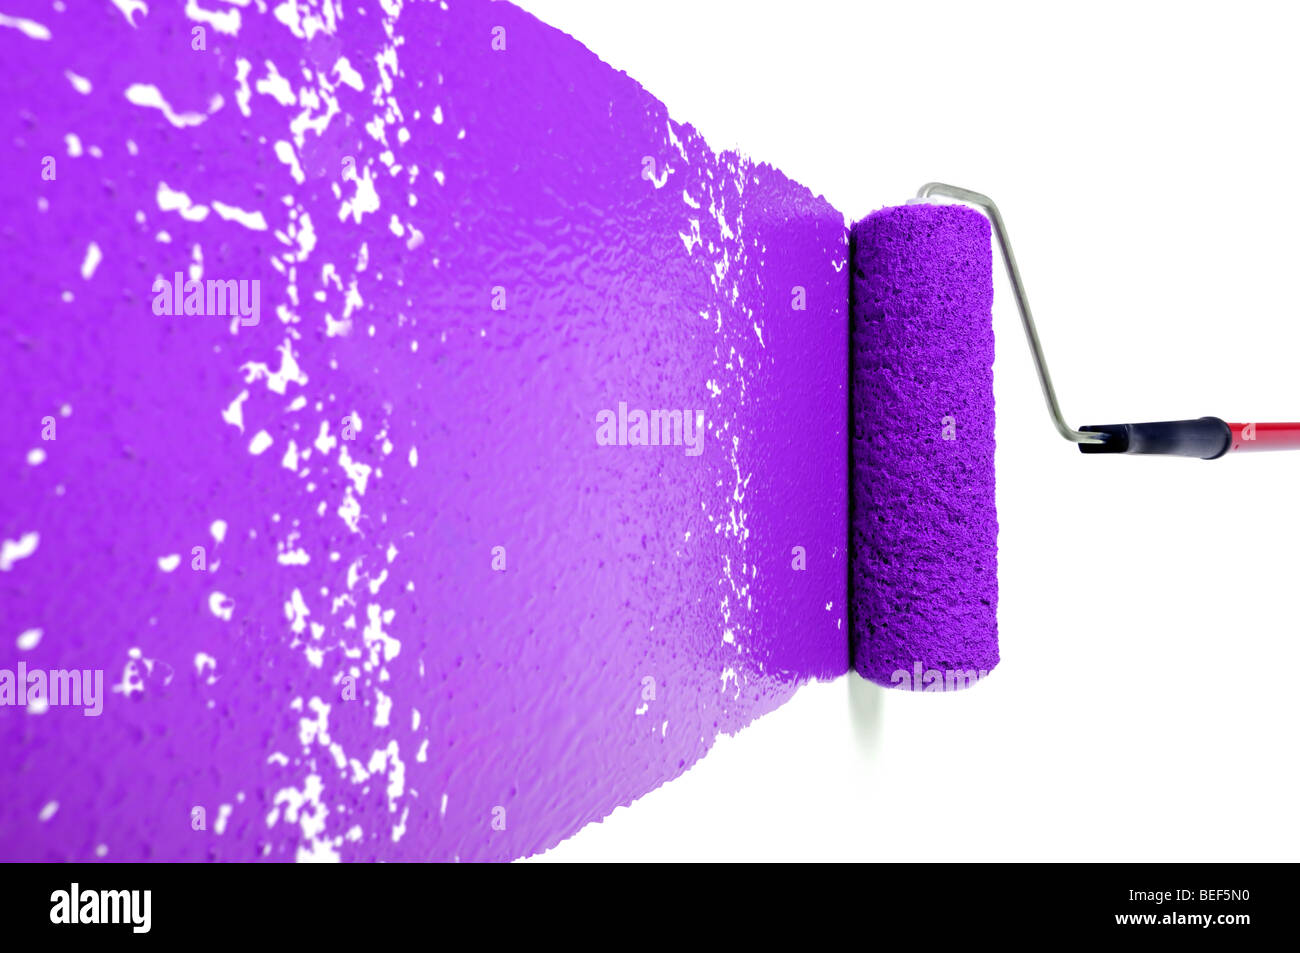 Dolor el rodillo con pintura púrpura sobre pared blanca Foto de stock